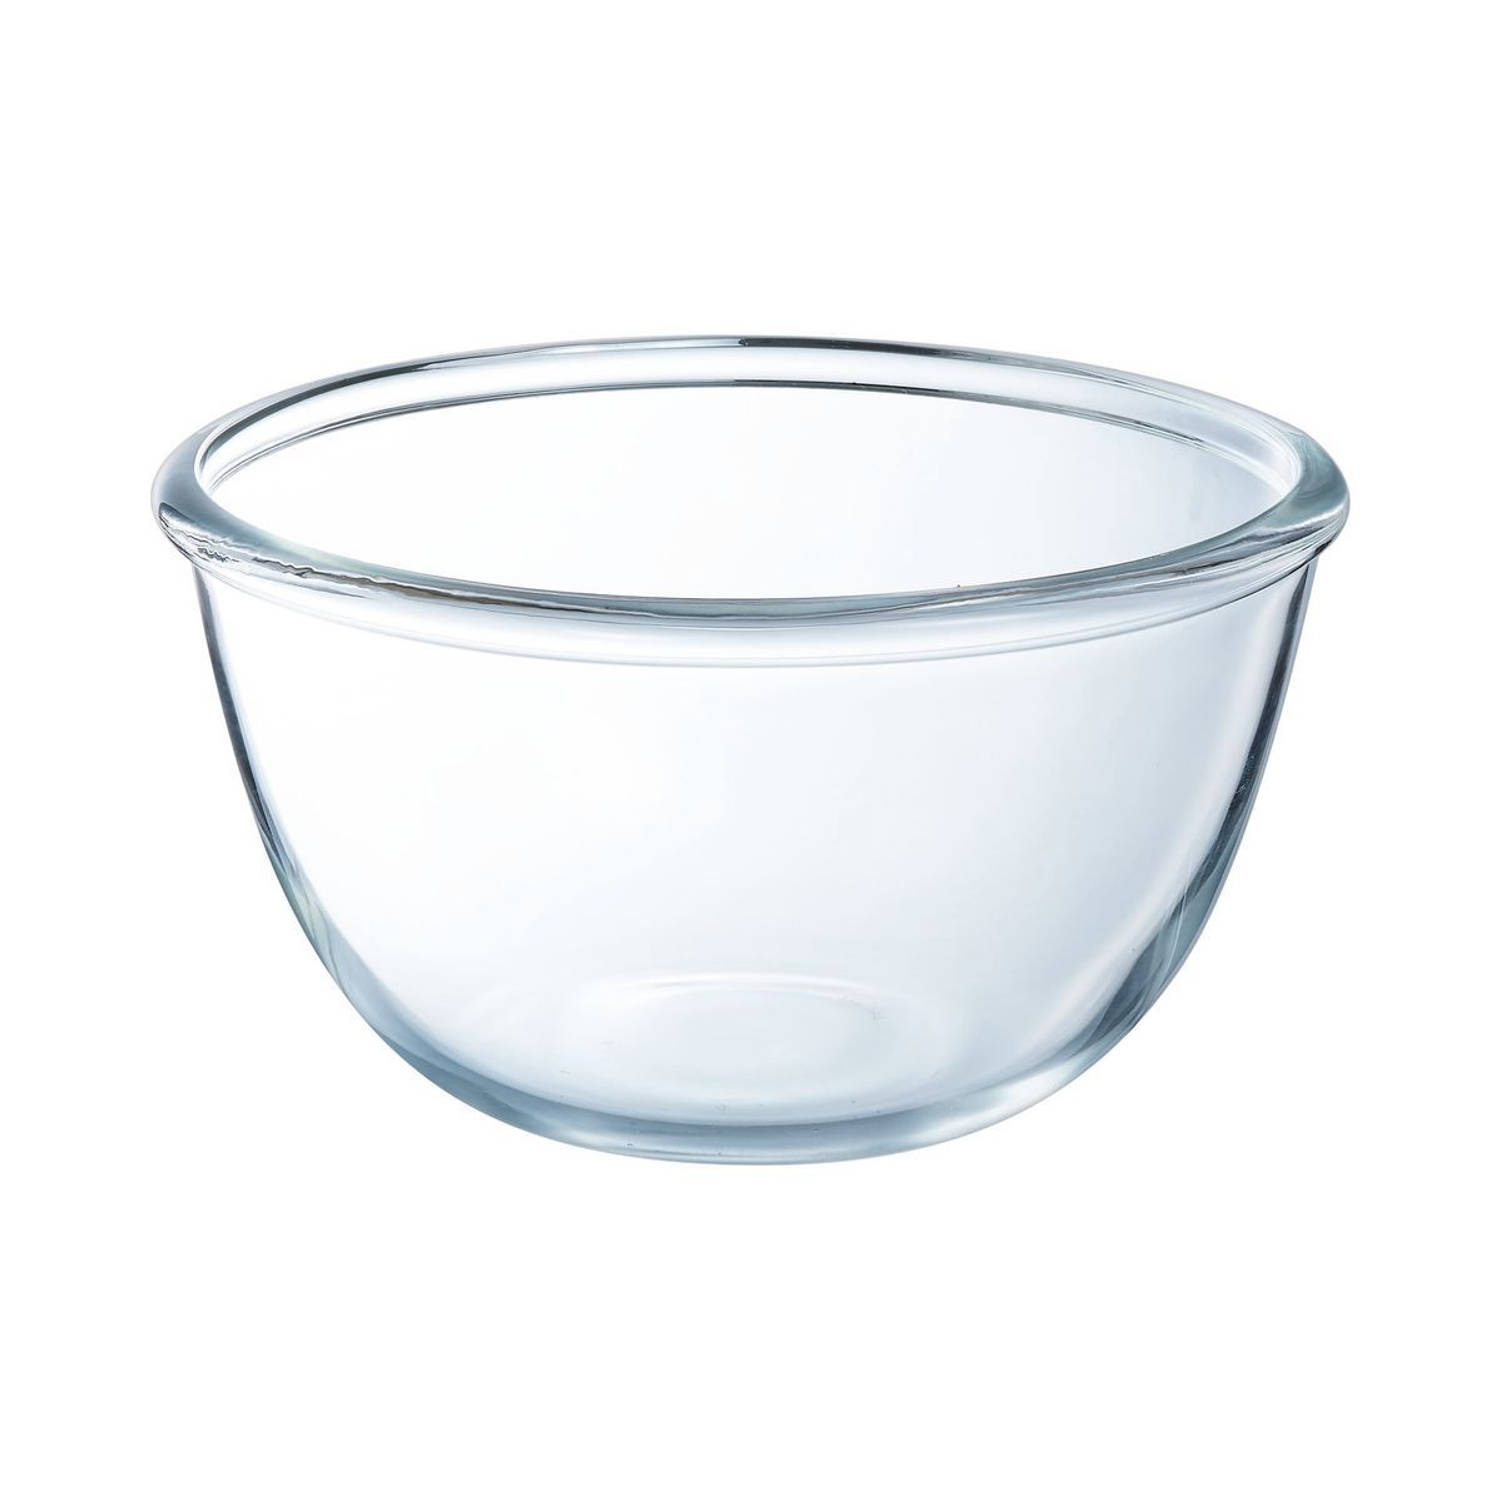 Luminarc Saladeschaal Mengkom Cocoon Glas ø 24 Cm 3 6 Liter